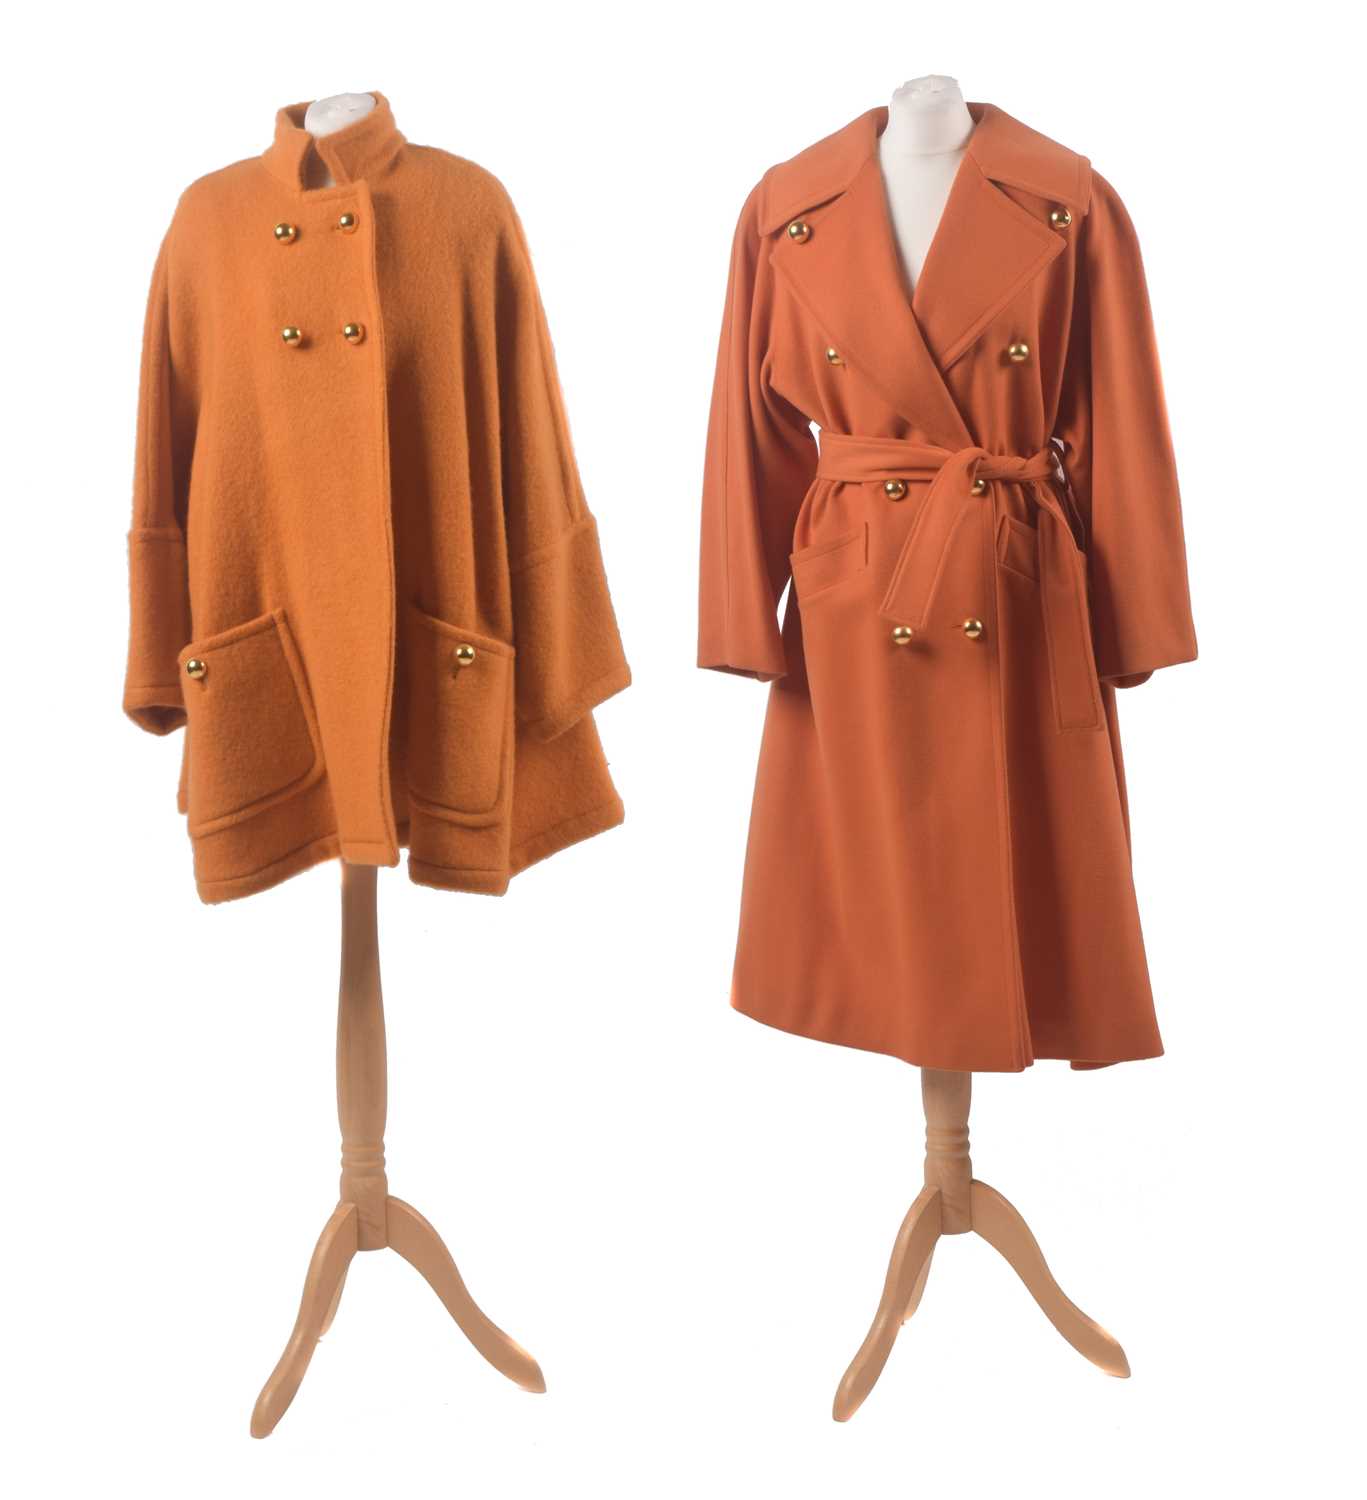 Lot 52 - Two orange coats by Guy Laroche